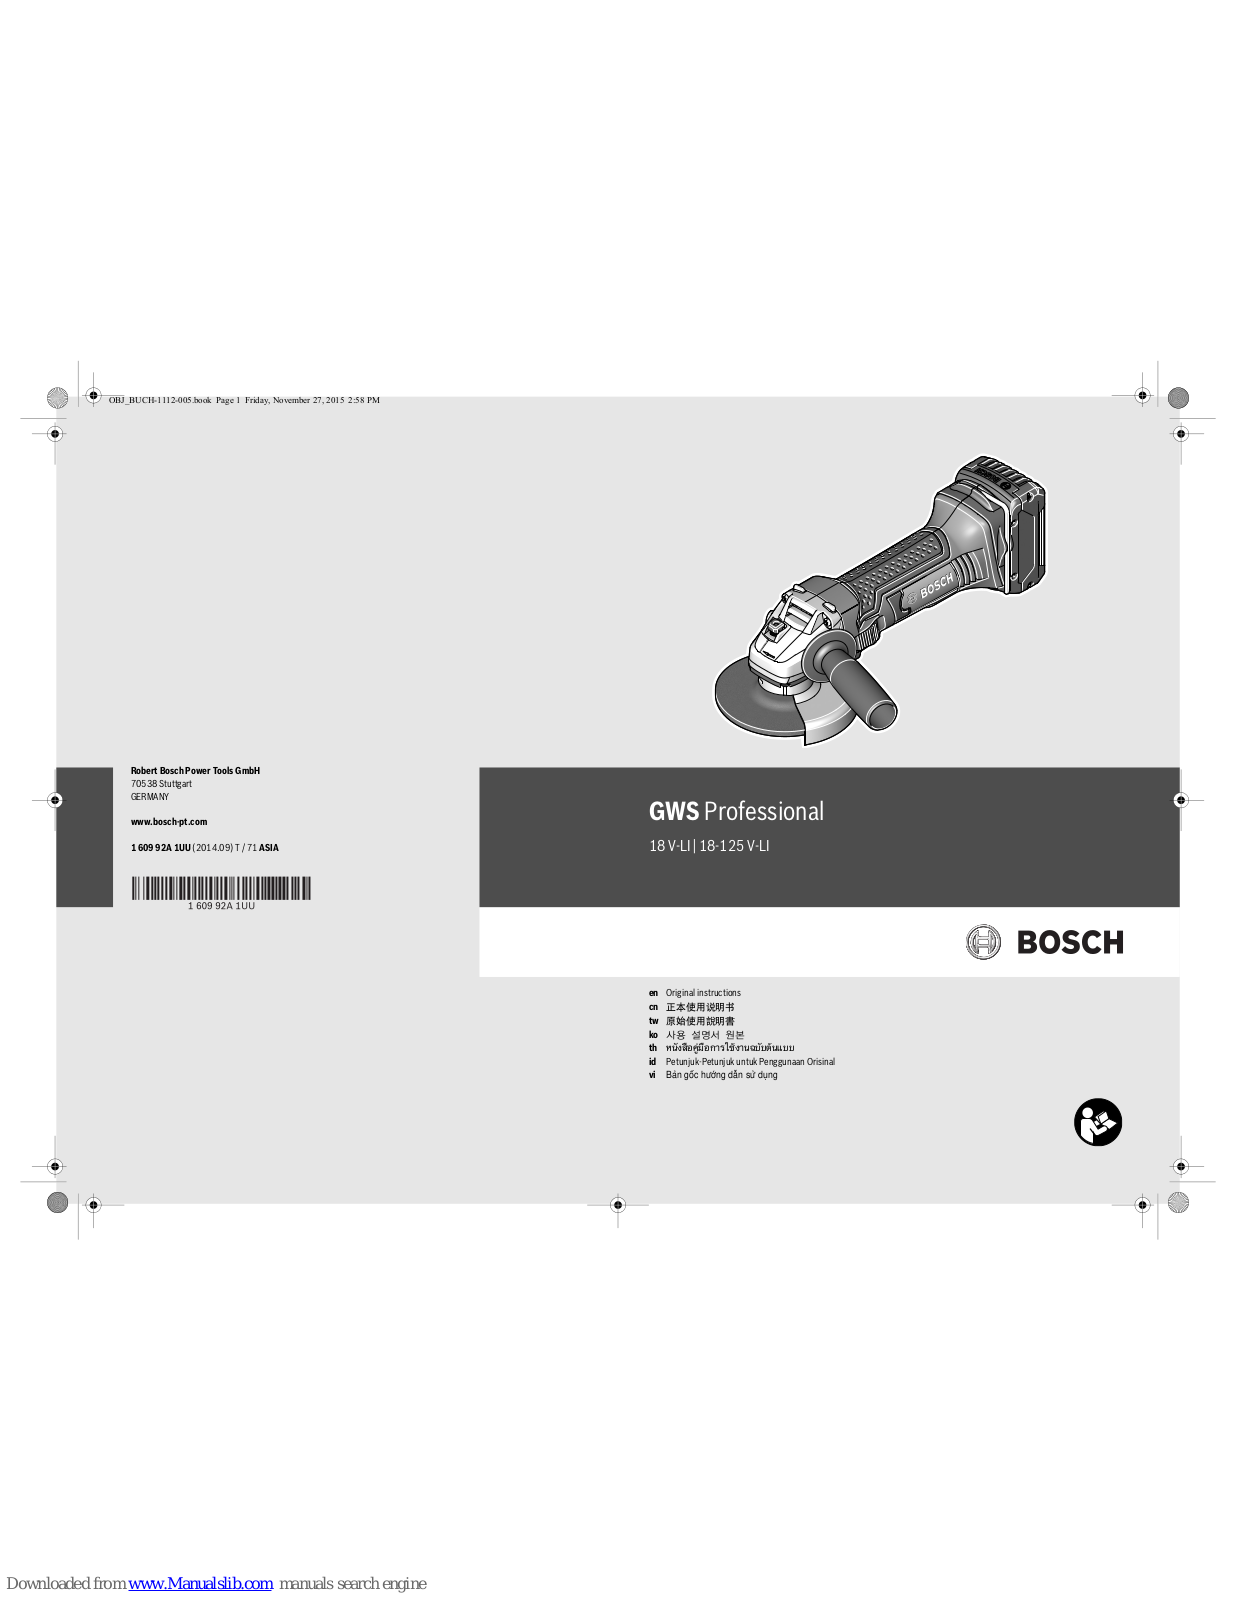 Bosch GWS Professional 18-125 V-LI, GWS Professional 18 V-LI Original Instructions Manual